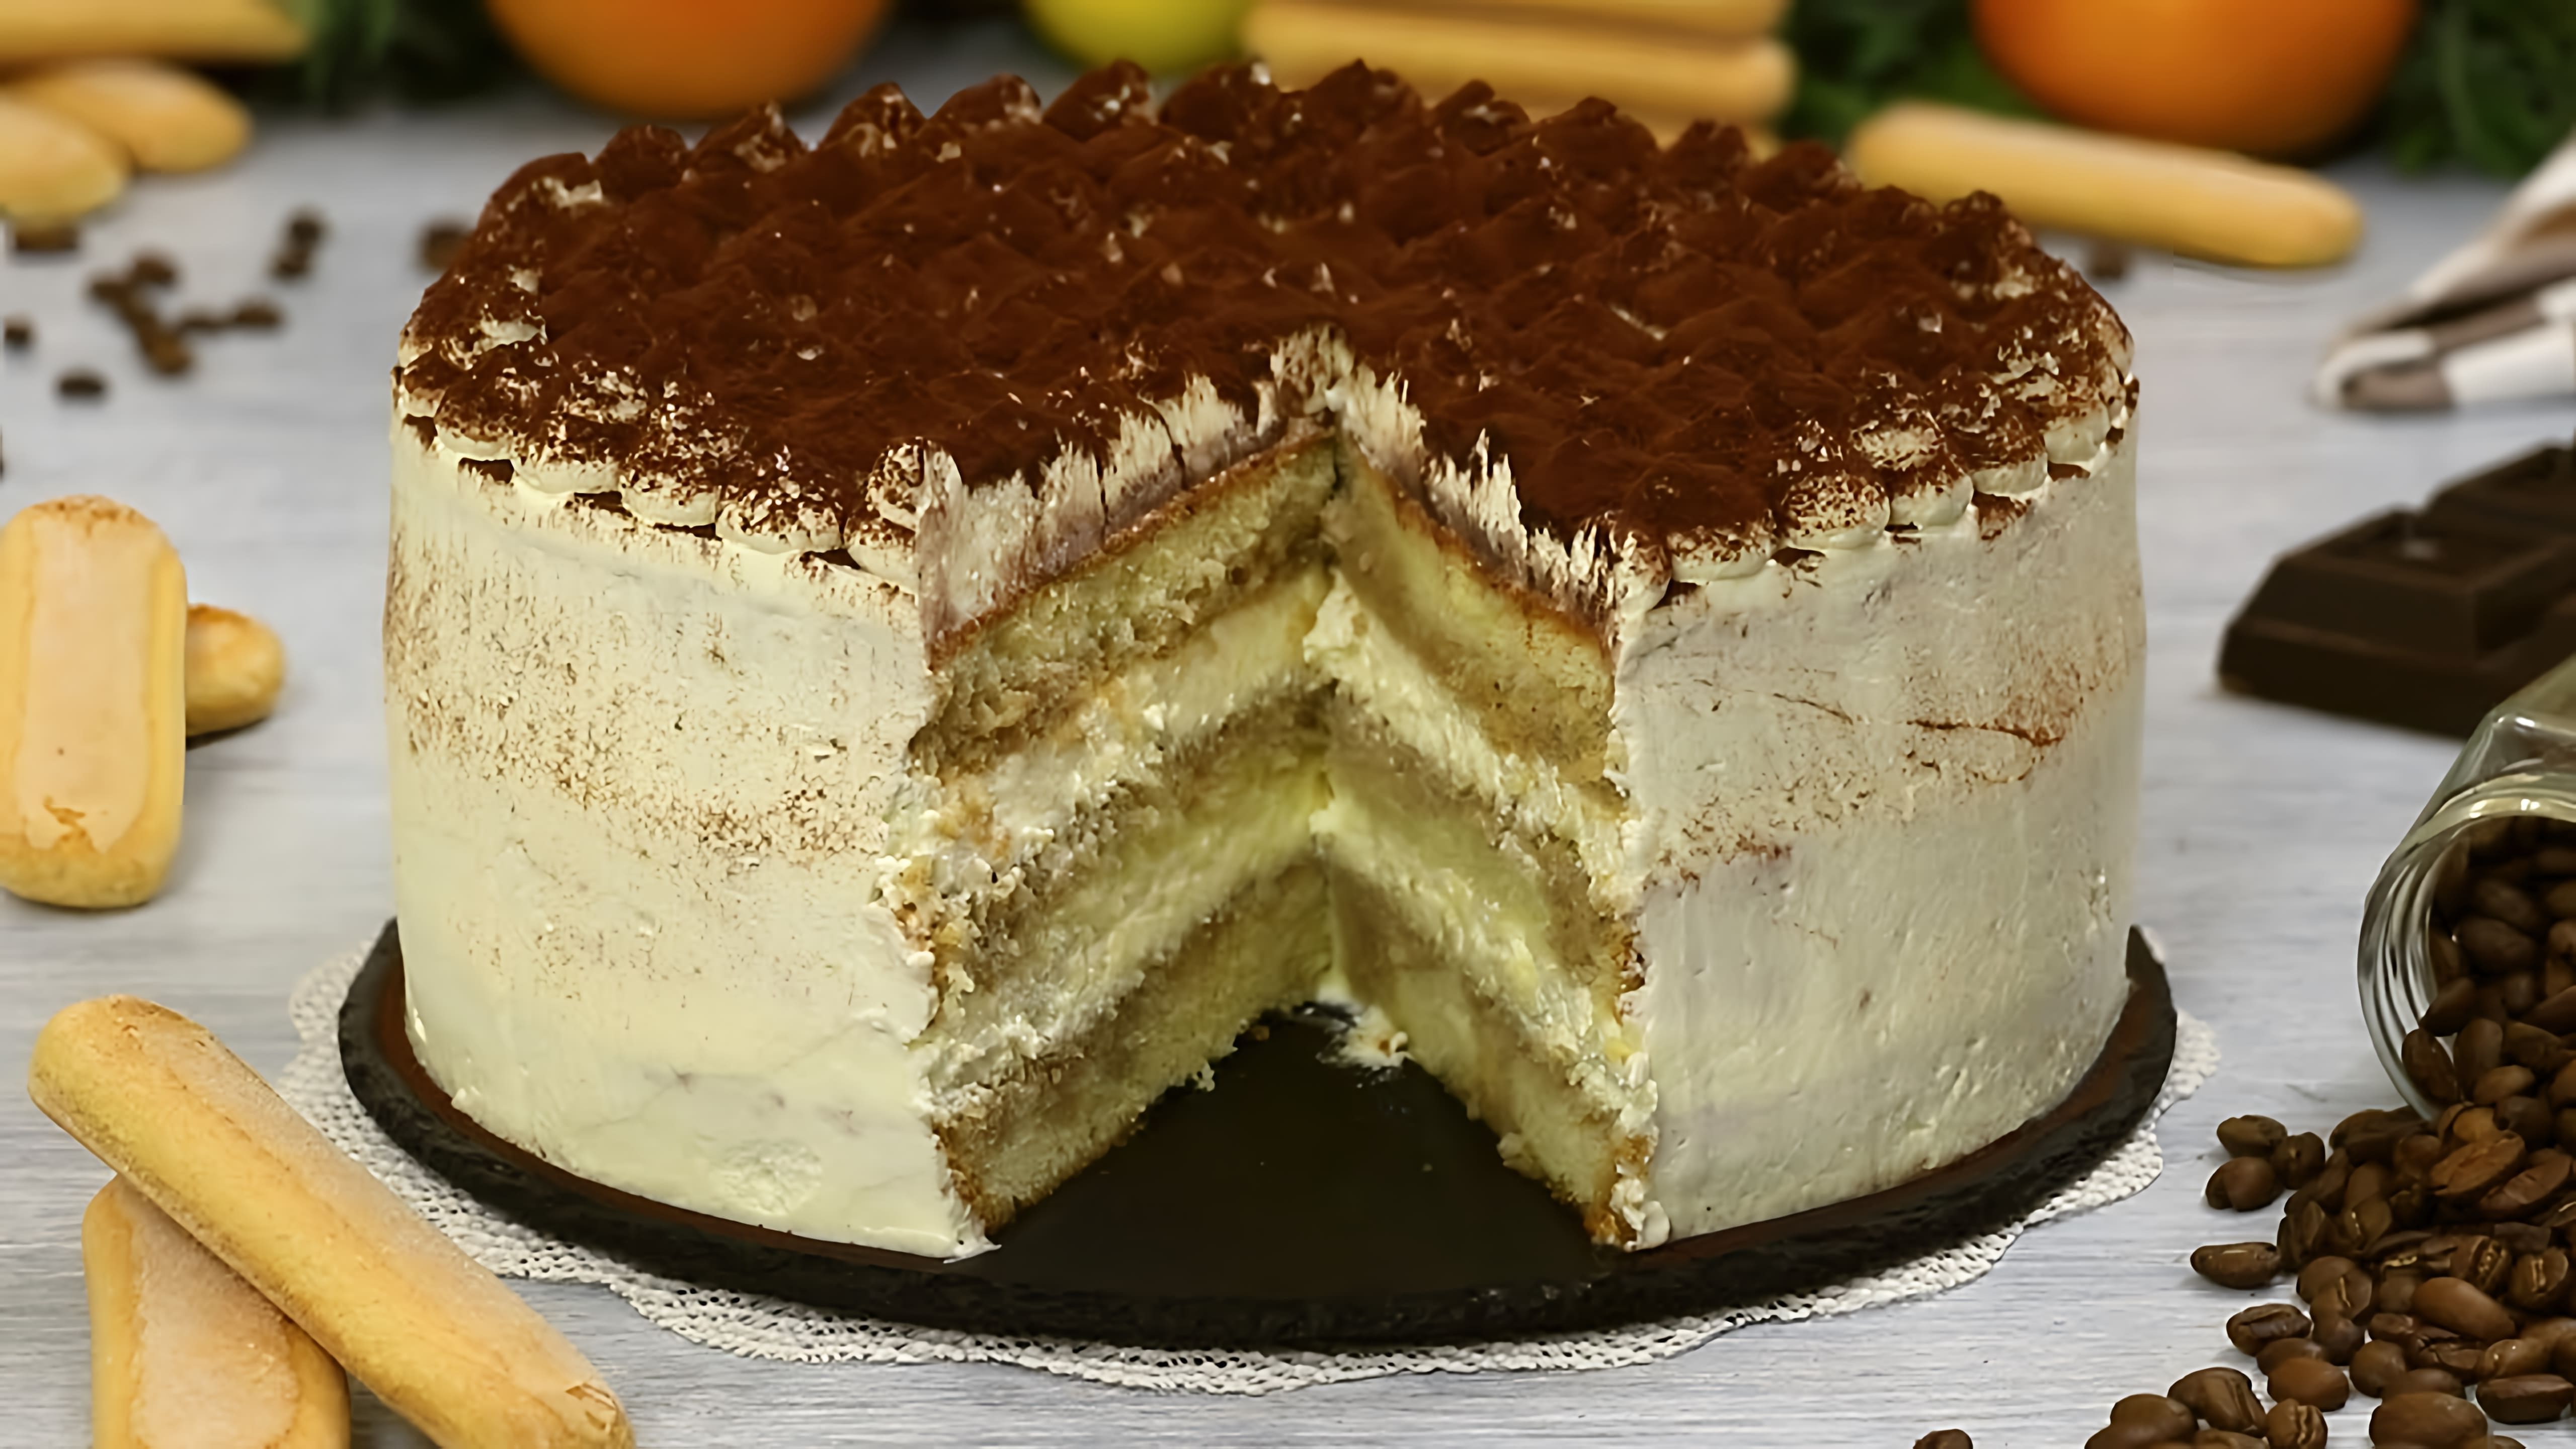 В этом видео Марьяна показывает, как приготовить торт "Тирамису" - итальянский десерт, который можно превратить в праздничный торт